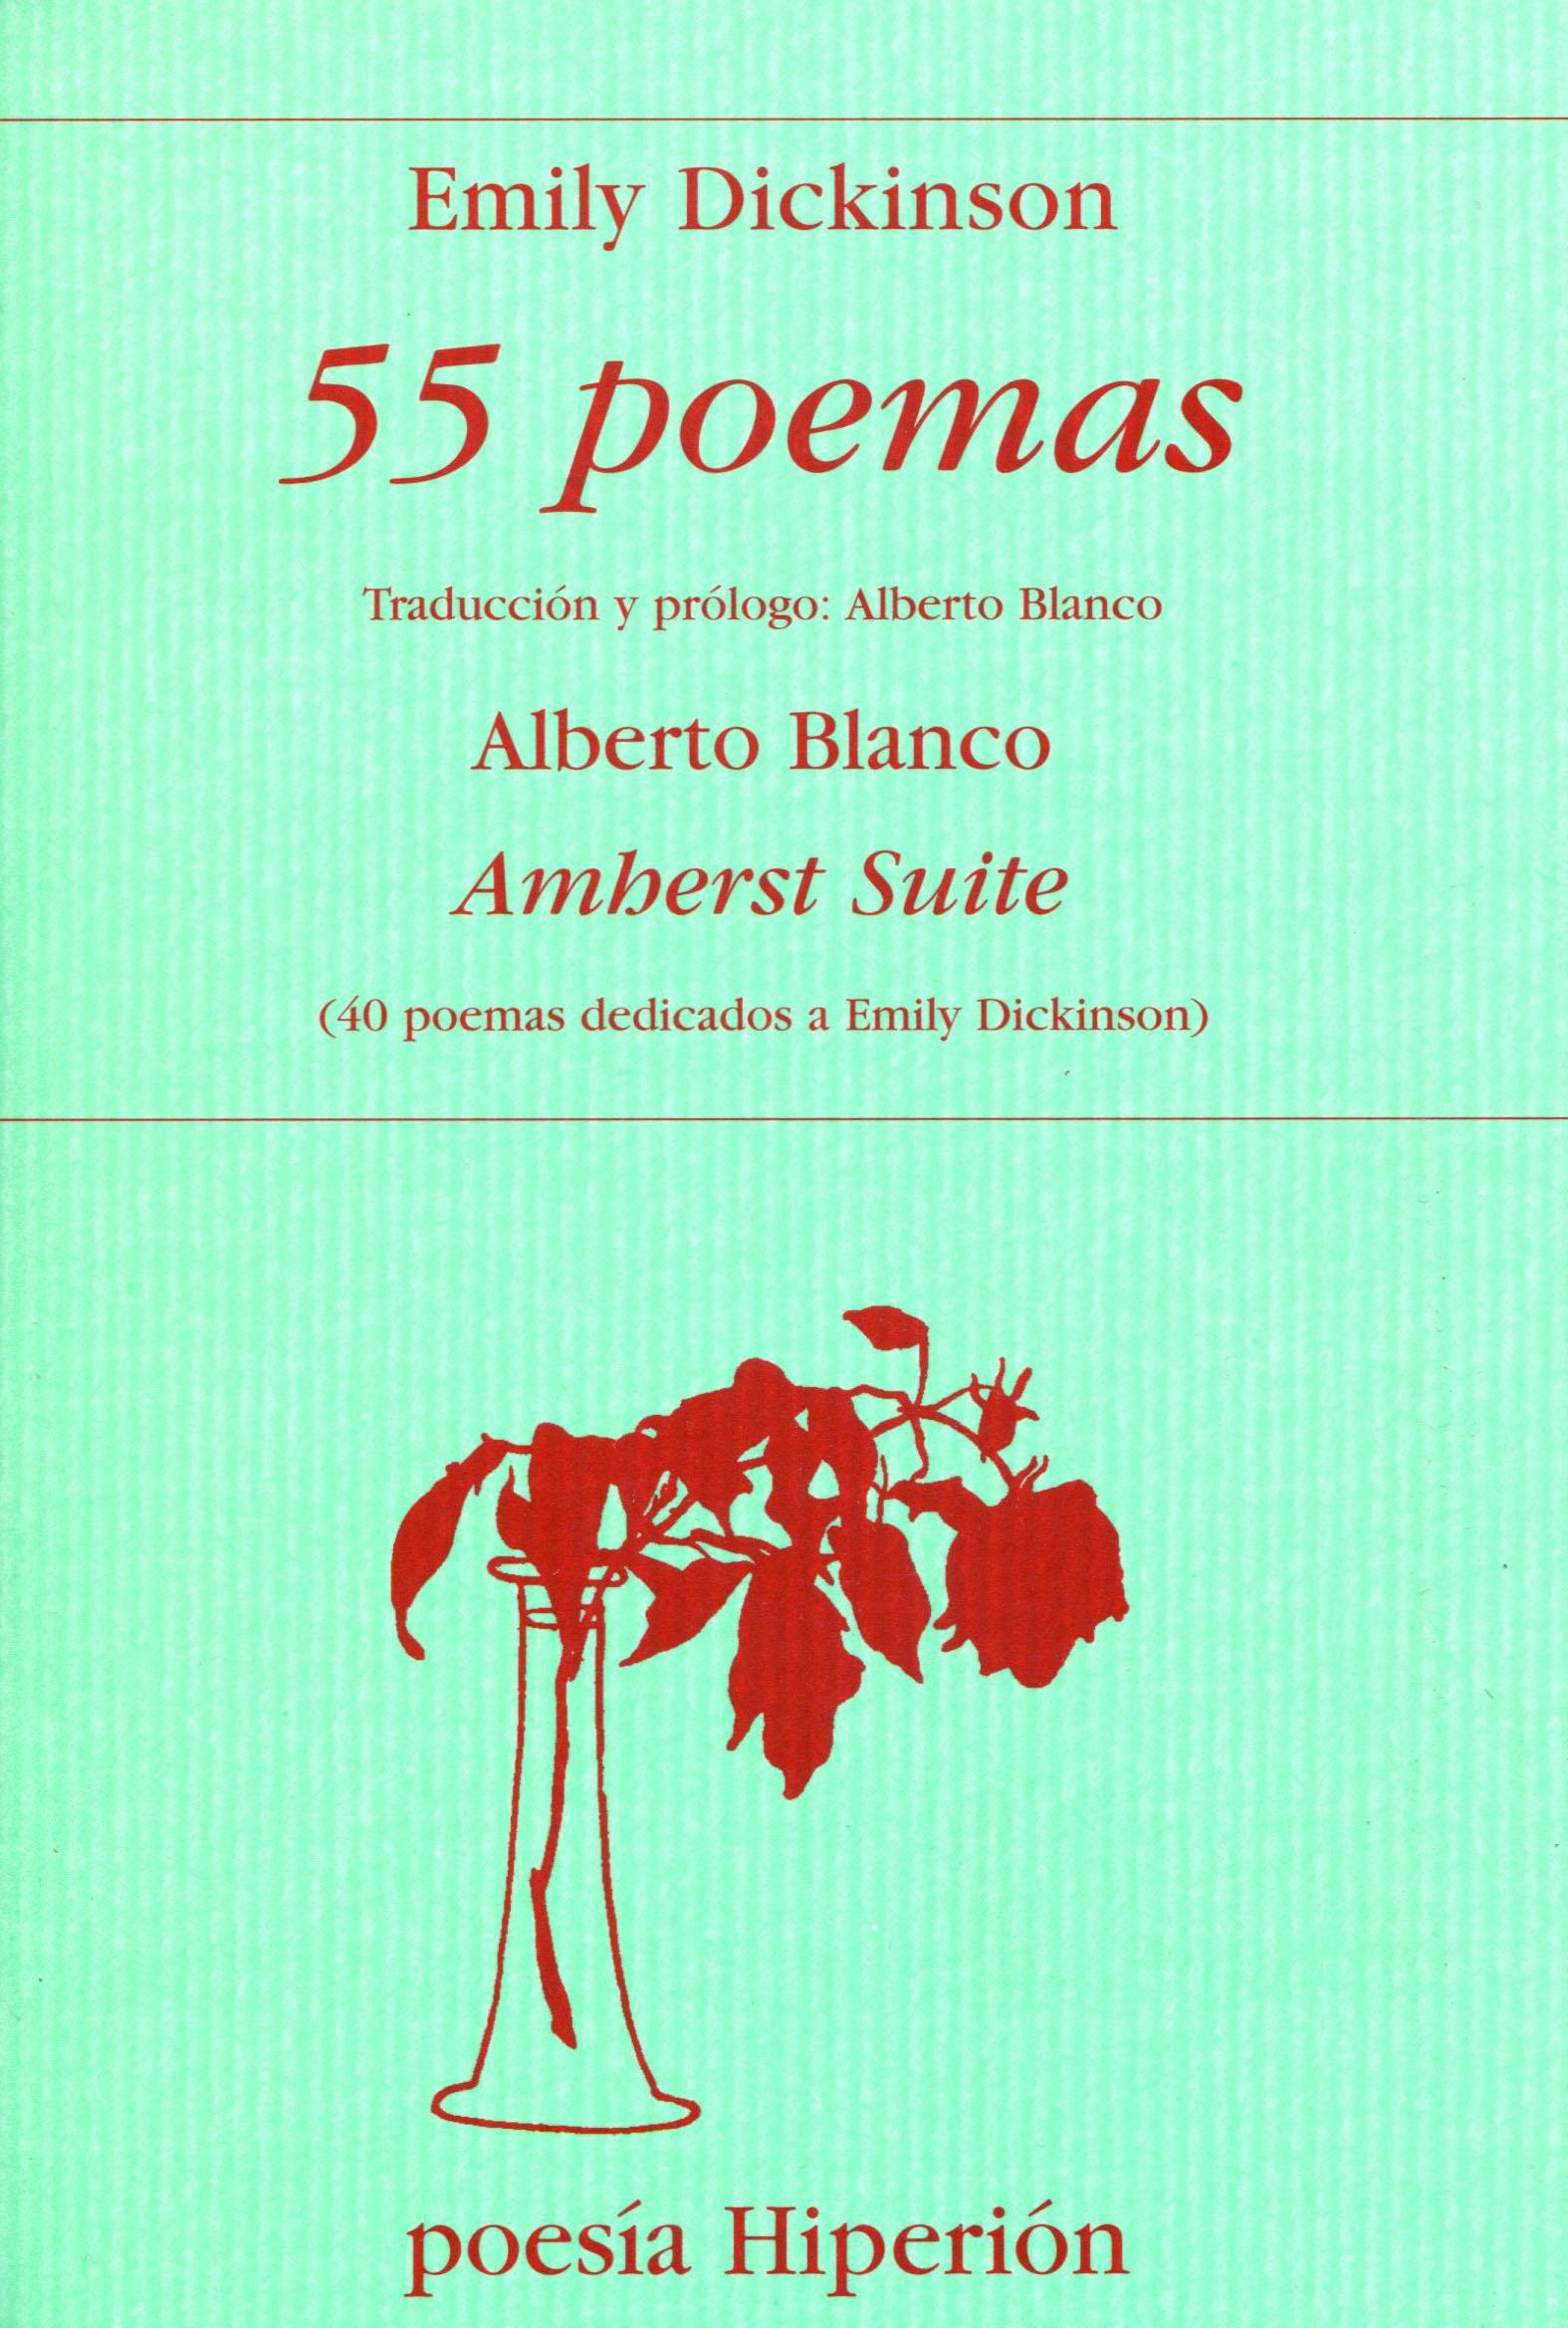 55 Poemas Seguido de Amherst Suite(40 Poemas Dedicados a Emily Dickinson) "Amherst Suite (40 Poemas Dedicados a Emily Dickinson)". 